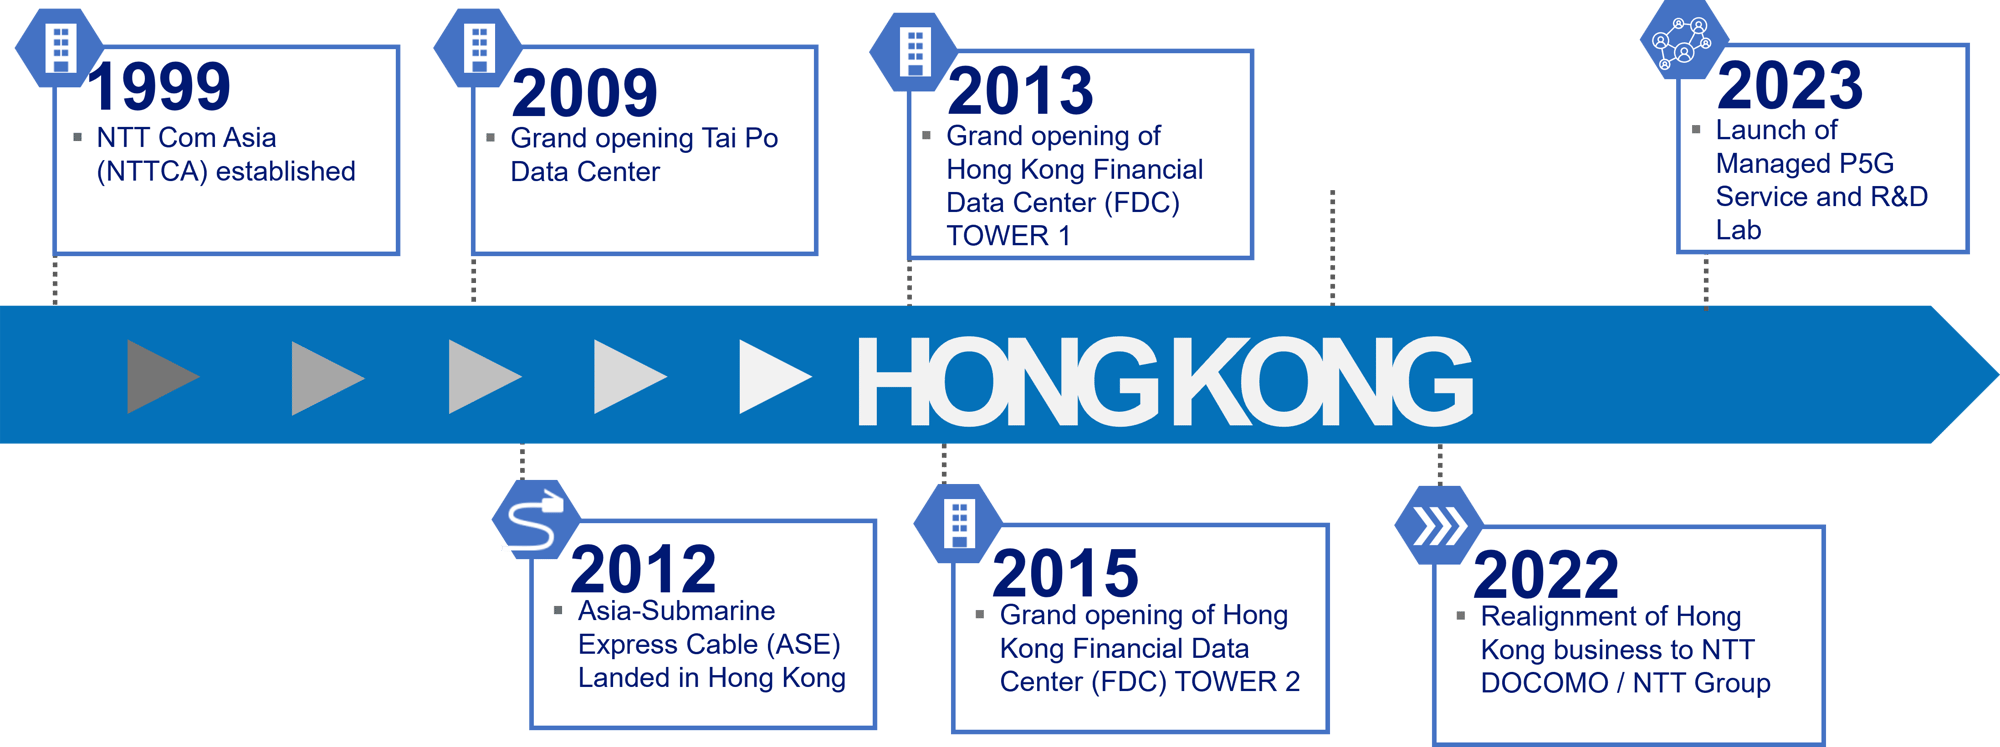 NTT Hong Kong_Timeline